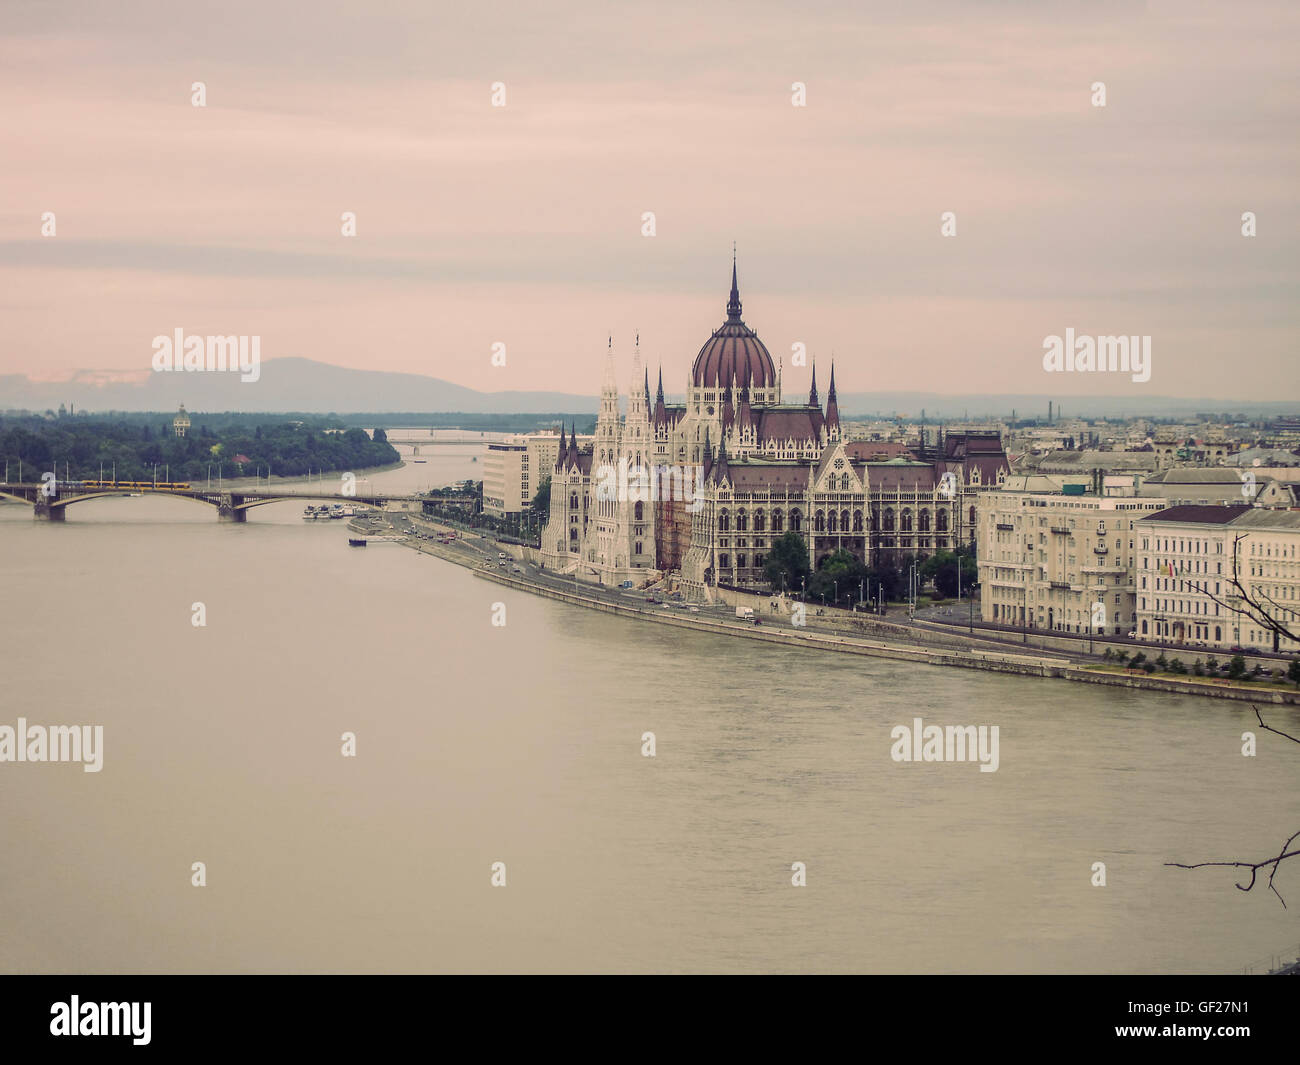 Parlament von Budapest ist es derzeit das größte Gebäude In Ungarn und immer noch das höchste Gebäude In Budapest Stockfoto